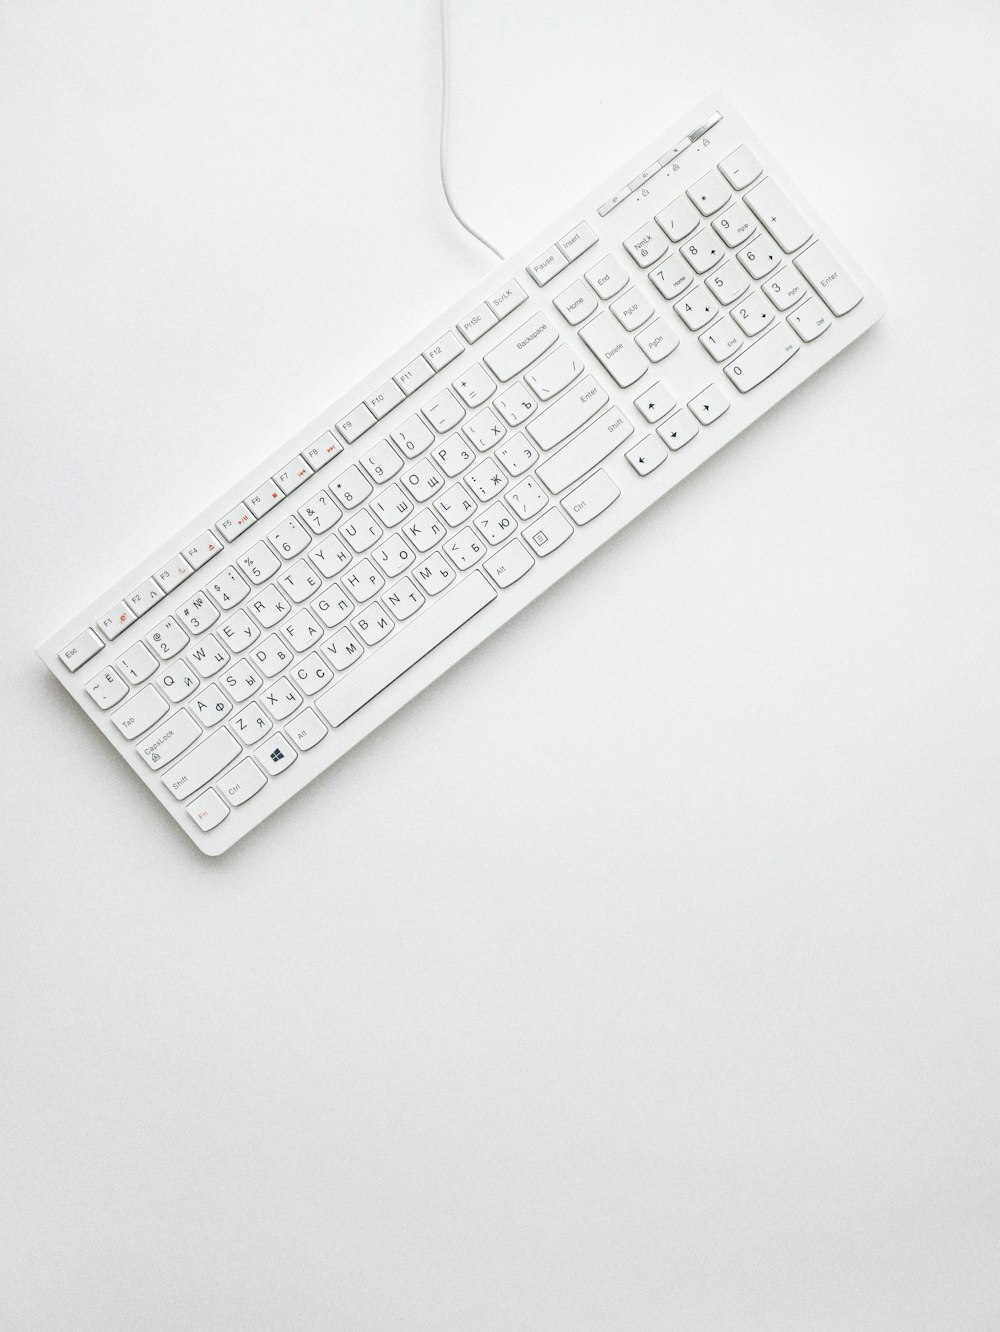 Clavier d’ordinateur filaire blanc sur surface blanche